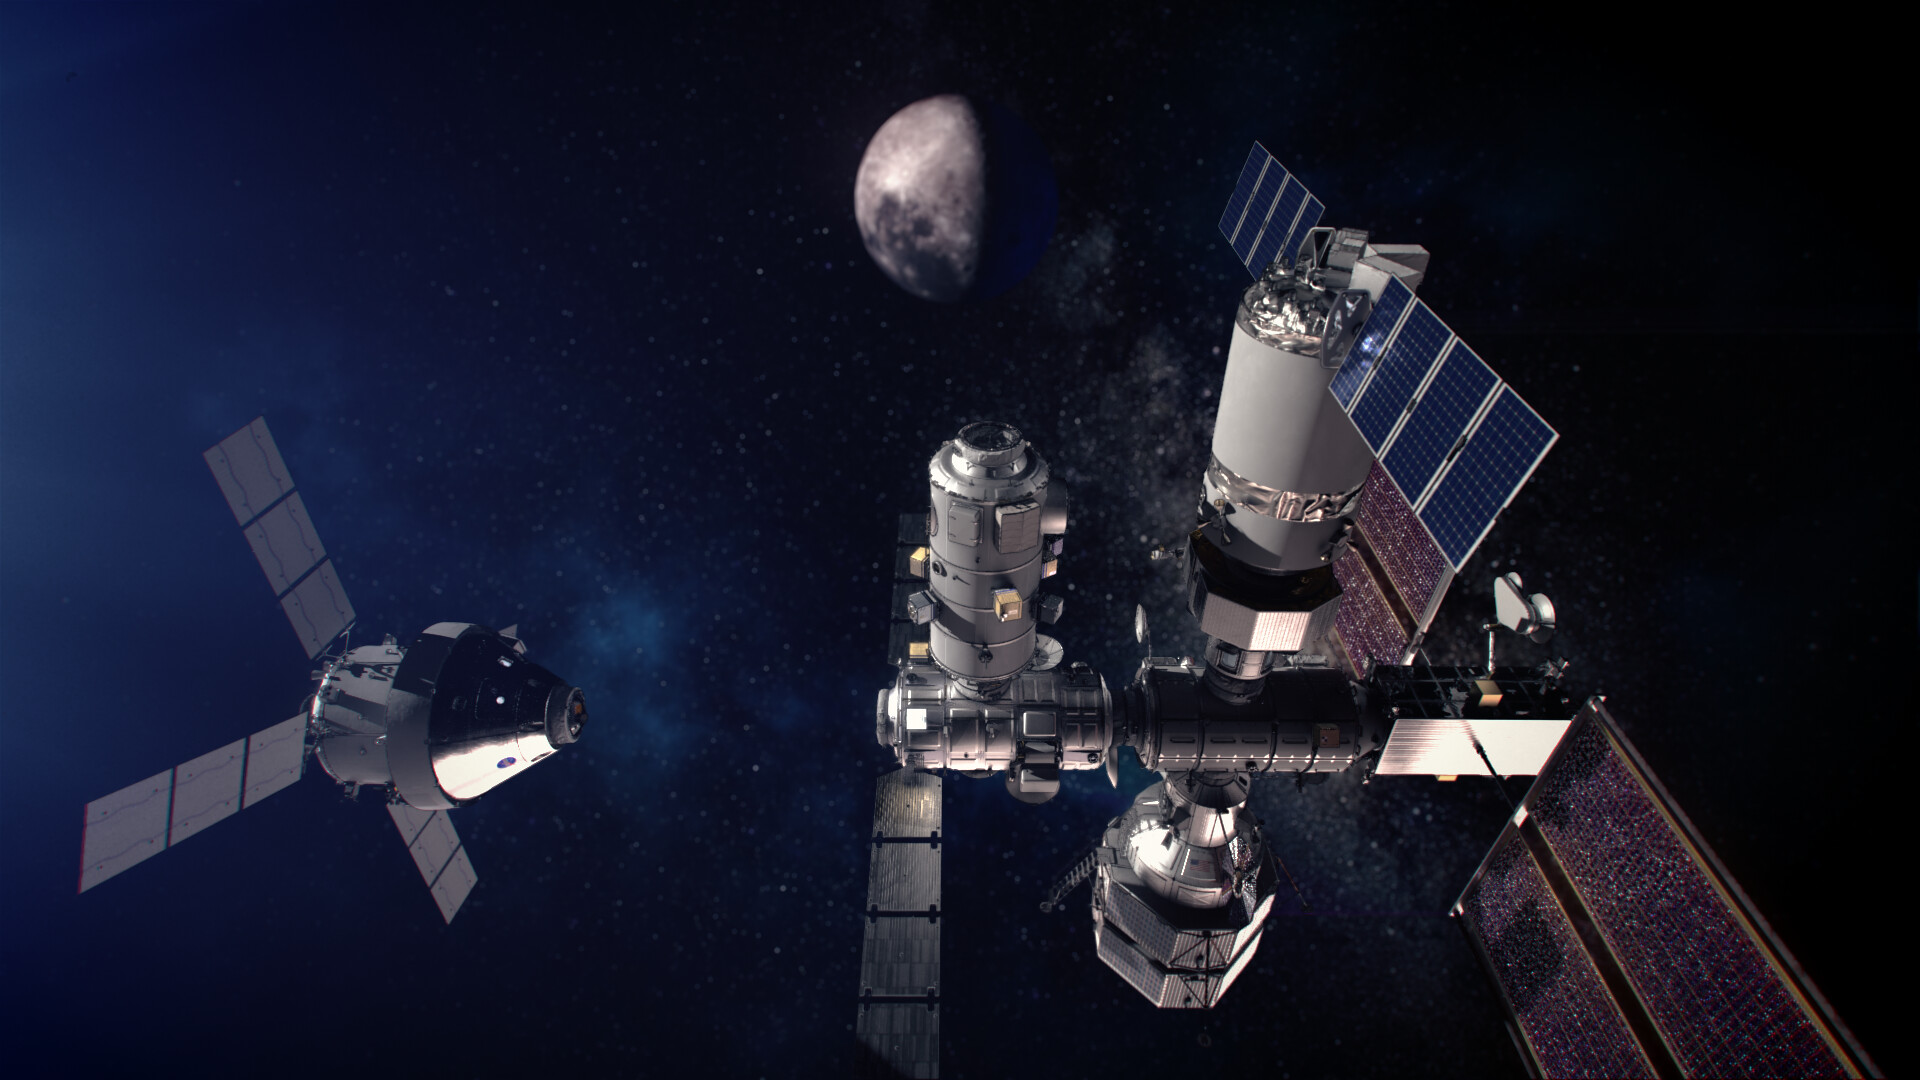 Ілюстрація взаємодії Gateway з космічним кораблем Orion, що наближається до шлюзу. Джерело: NASA/Alberto Bertolin